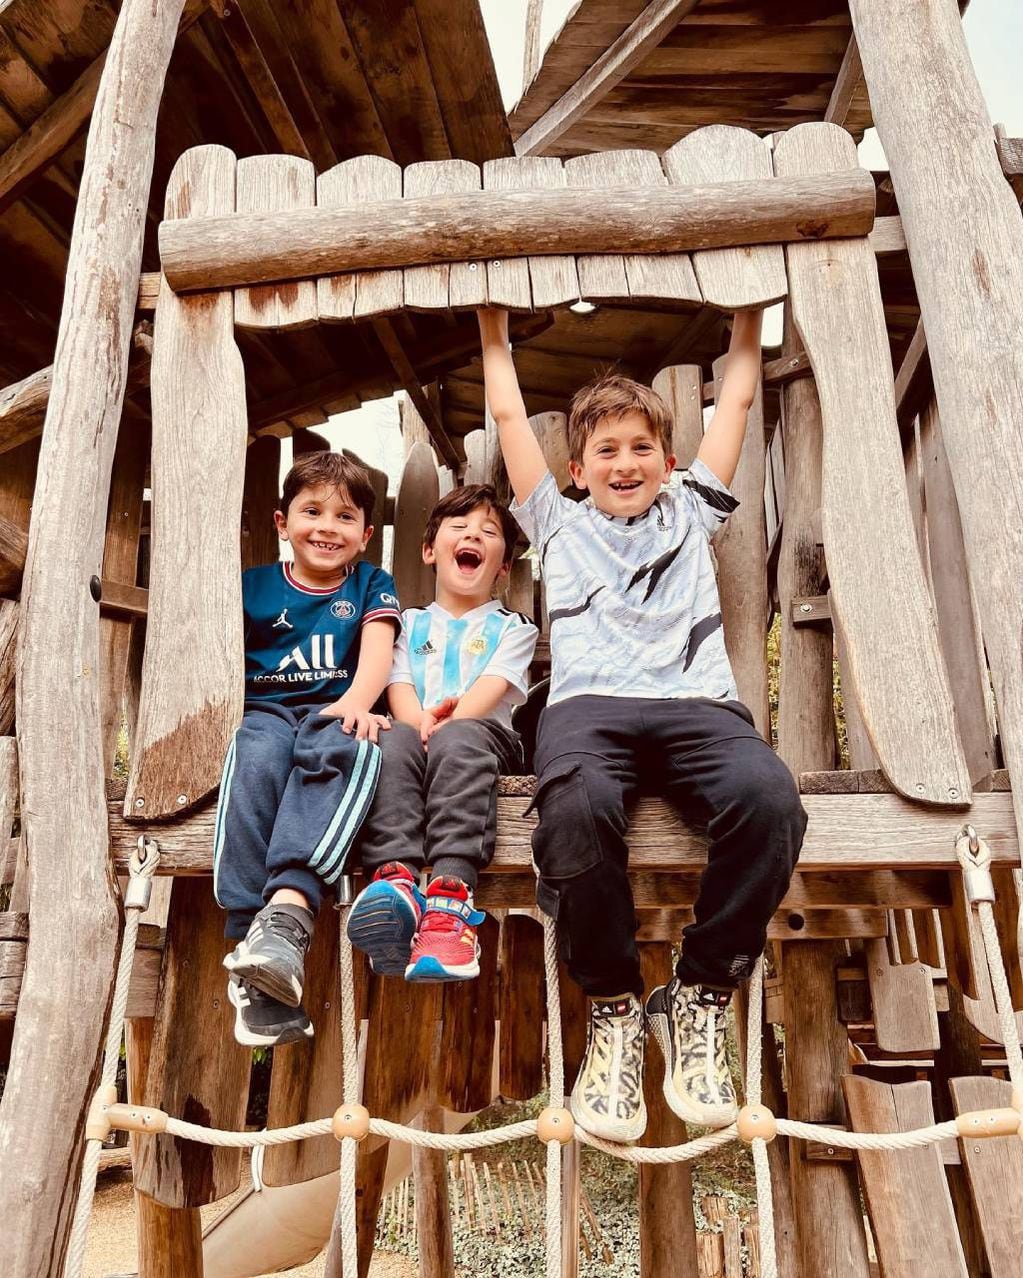 Antonela Roccuzzo les sacó una foto a Mateo Messi, Ciro Messi y Thiago Messi mientras estaban subidos a un mangrullo de madera para juegos infantiles.